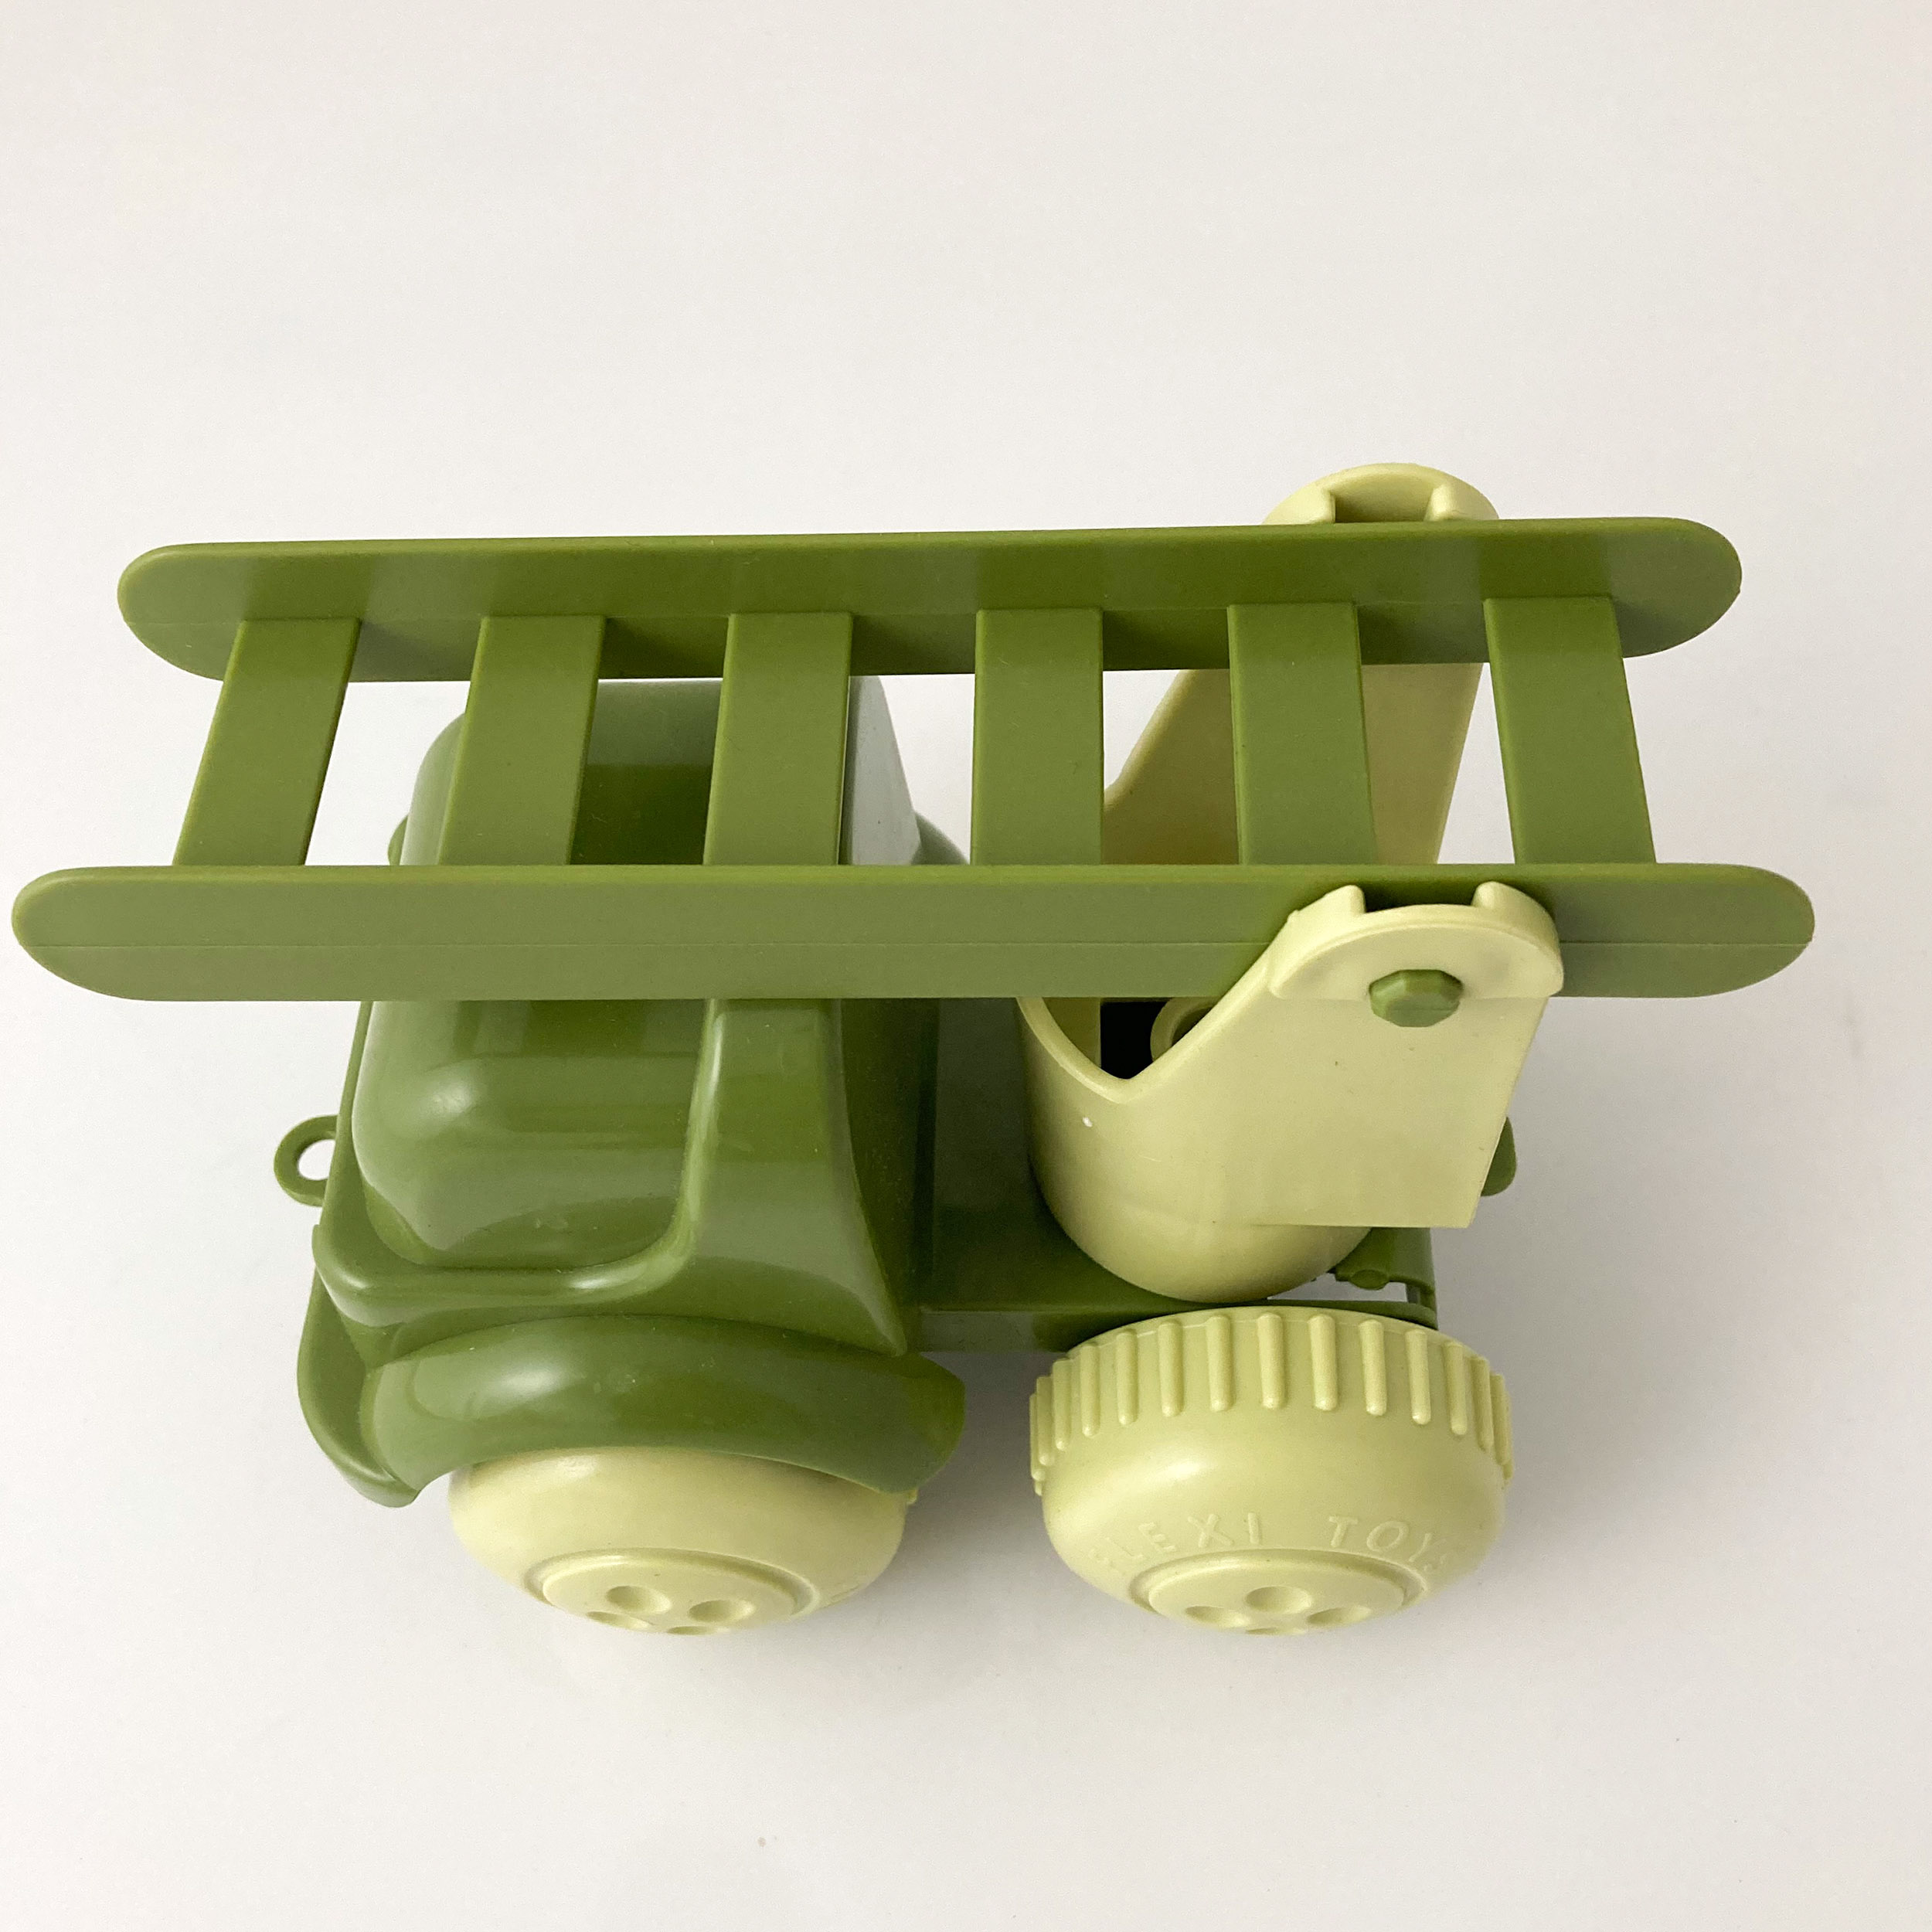 Kinderspielzeug Flexitoys Bio hergestellt aus Zuckerrohr - Feuerwehr